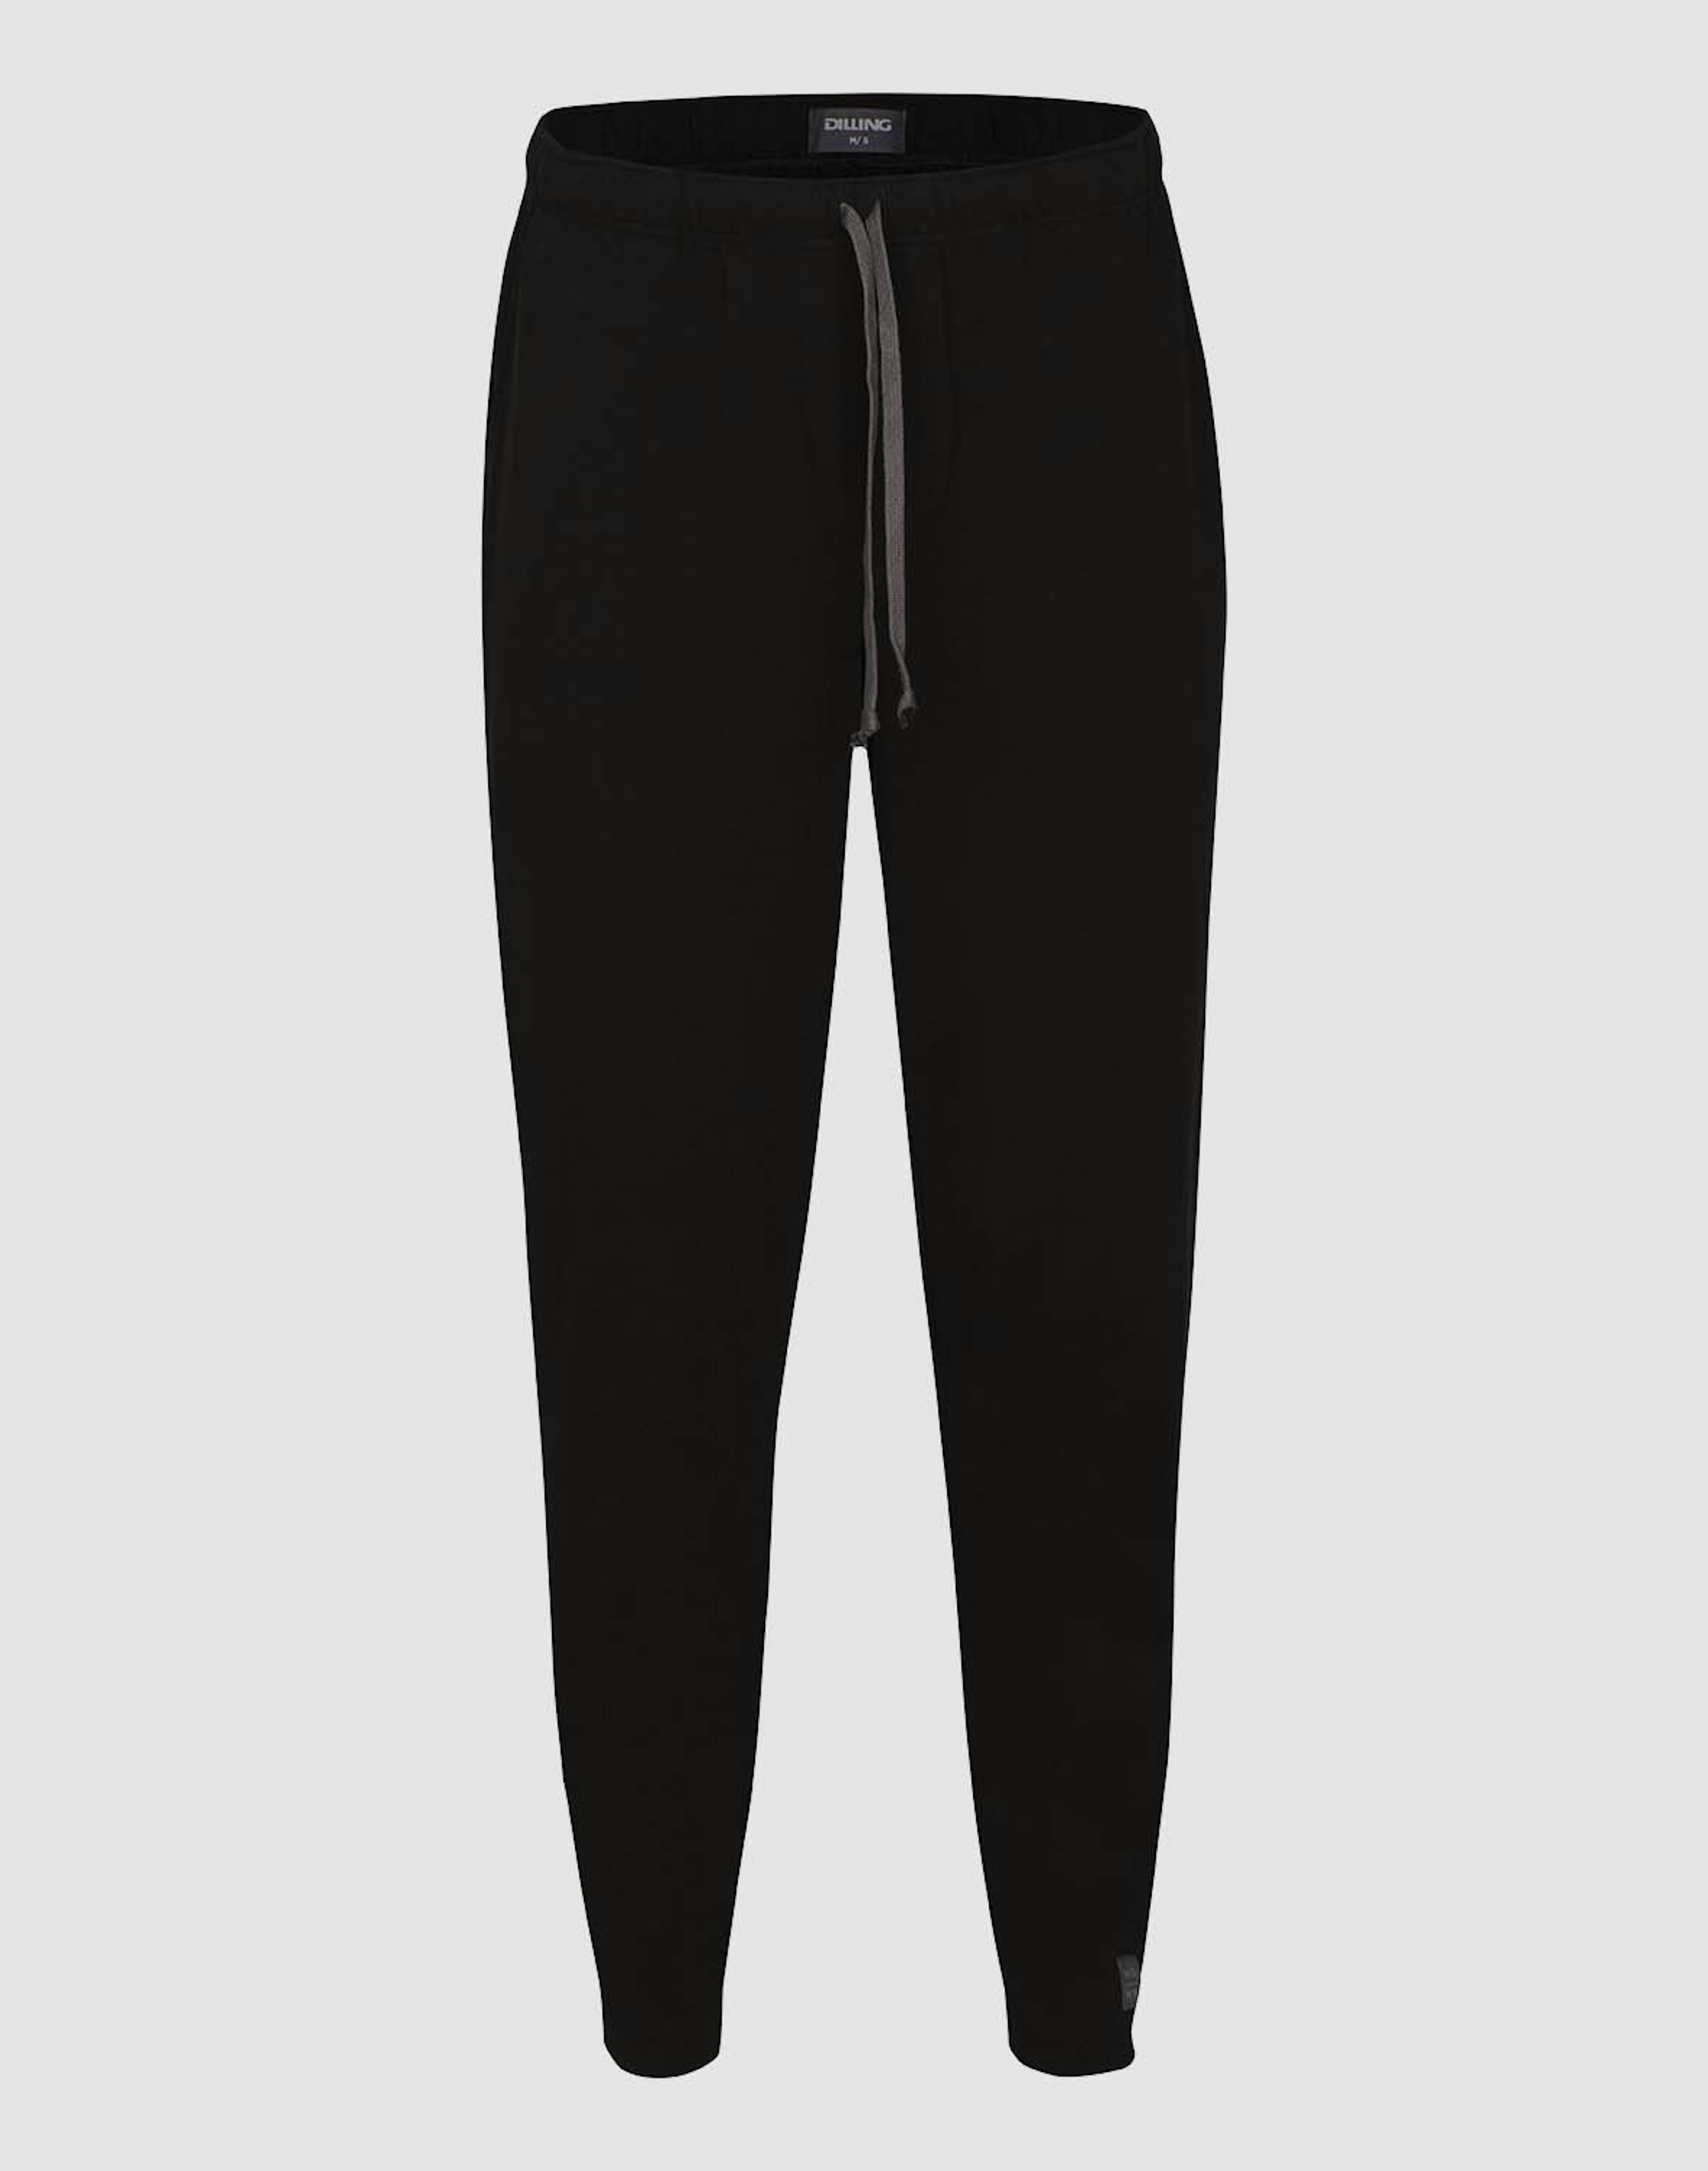 Jogginghose für Damen aus Baumwolle schwarz